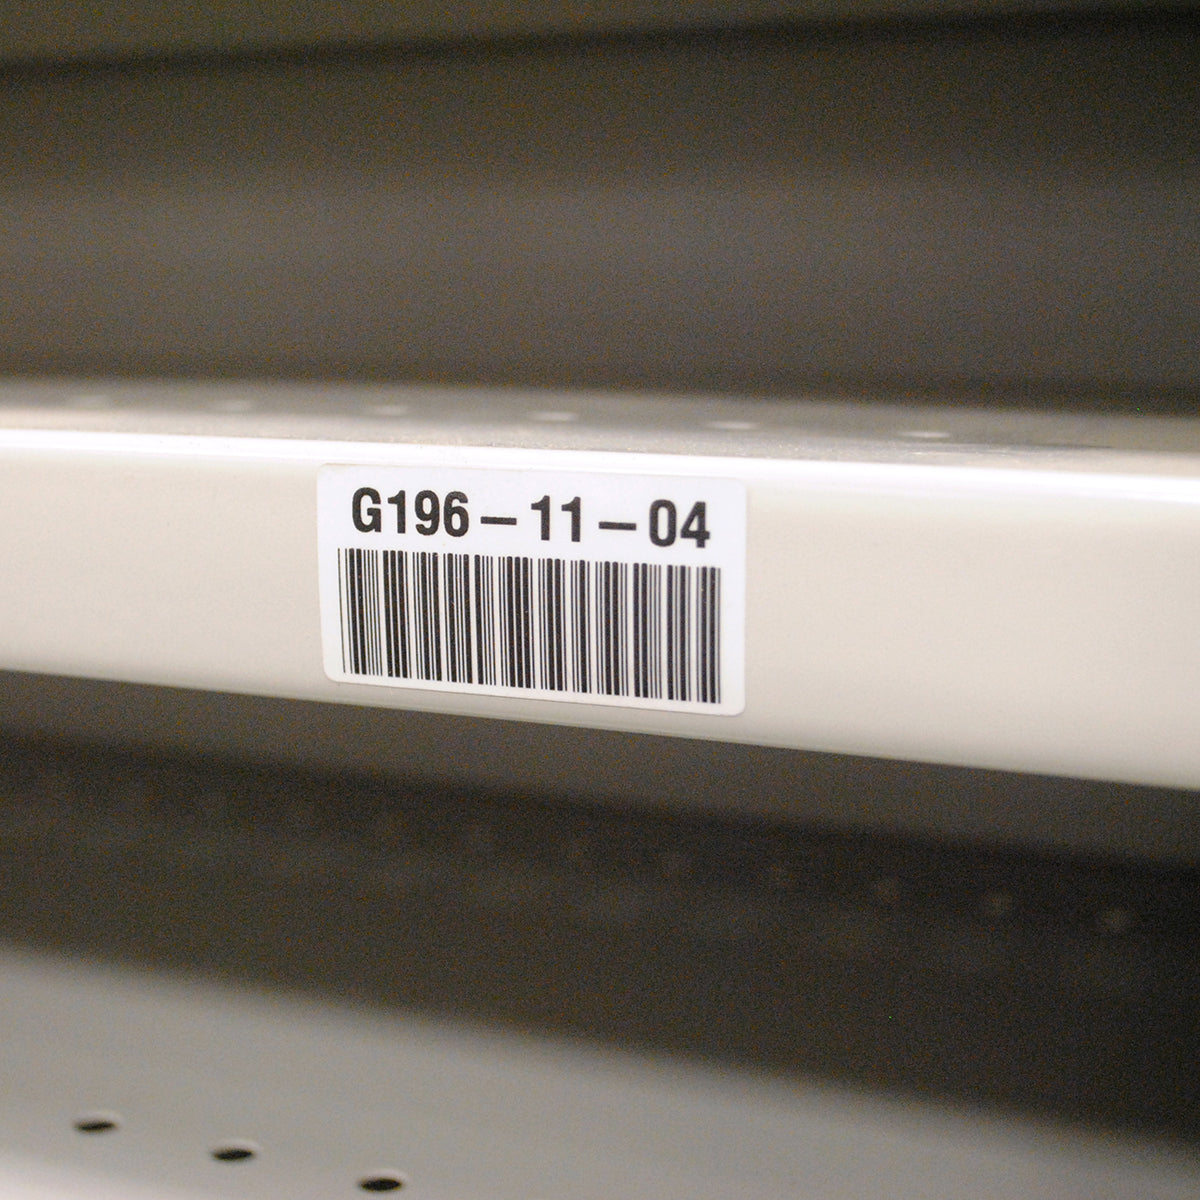 018378 - Etichette per codici a barre e targhe di identificazione in poliestere bianco opaco BMP71 BMP61 ROTOLO DA 100 ETICHETTE